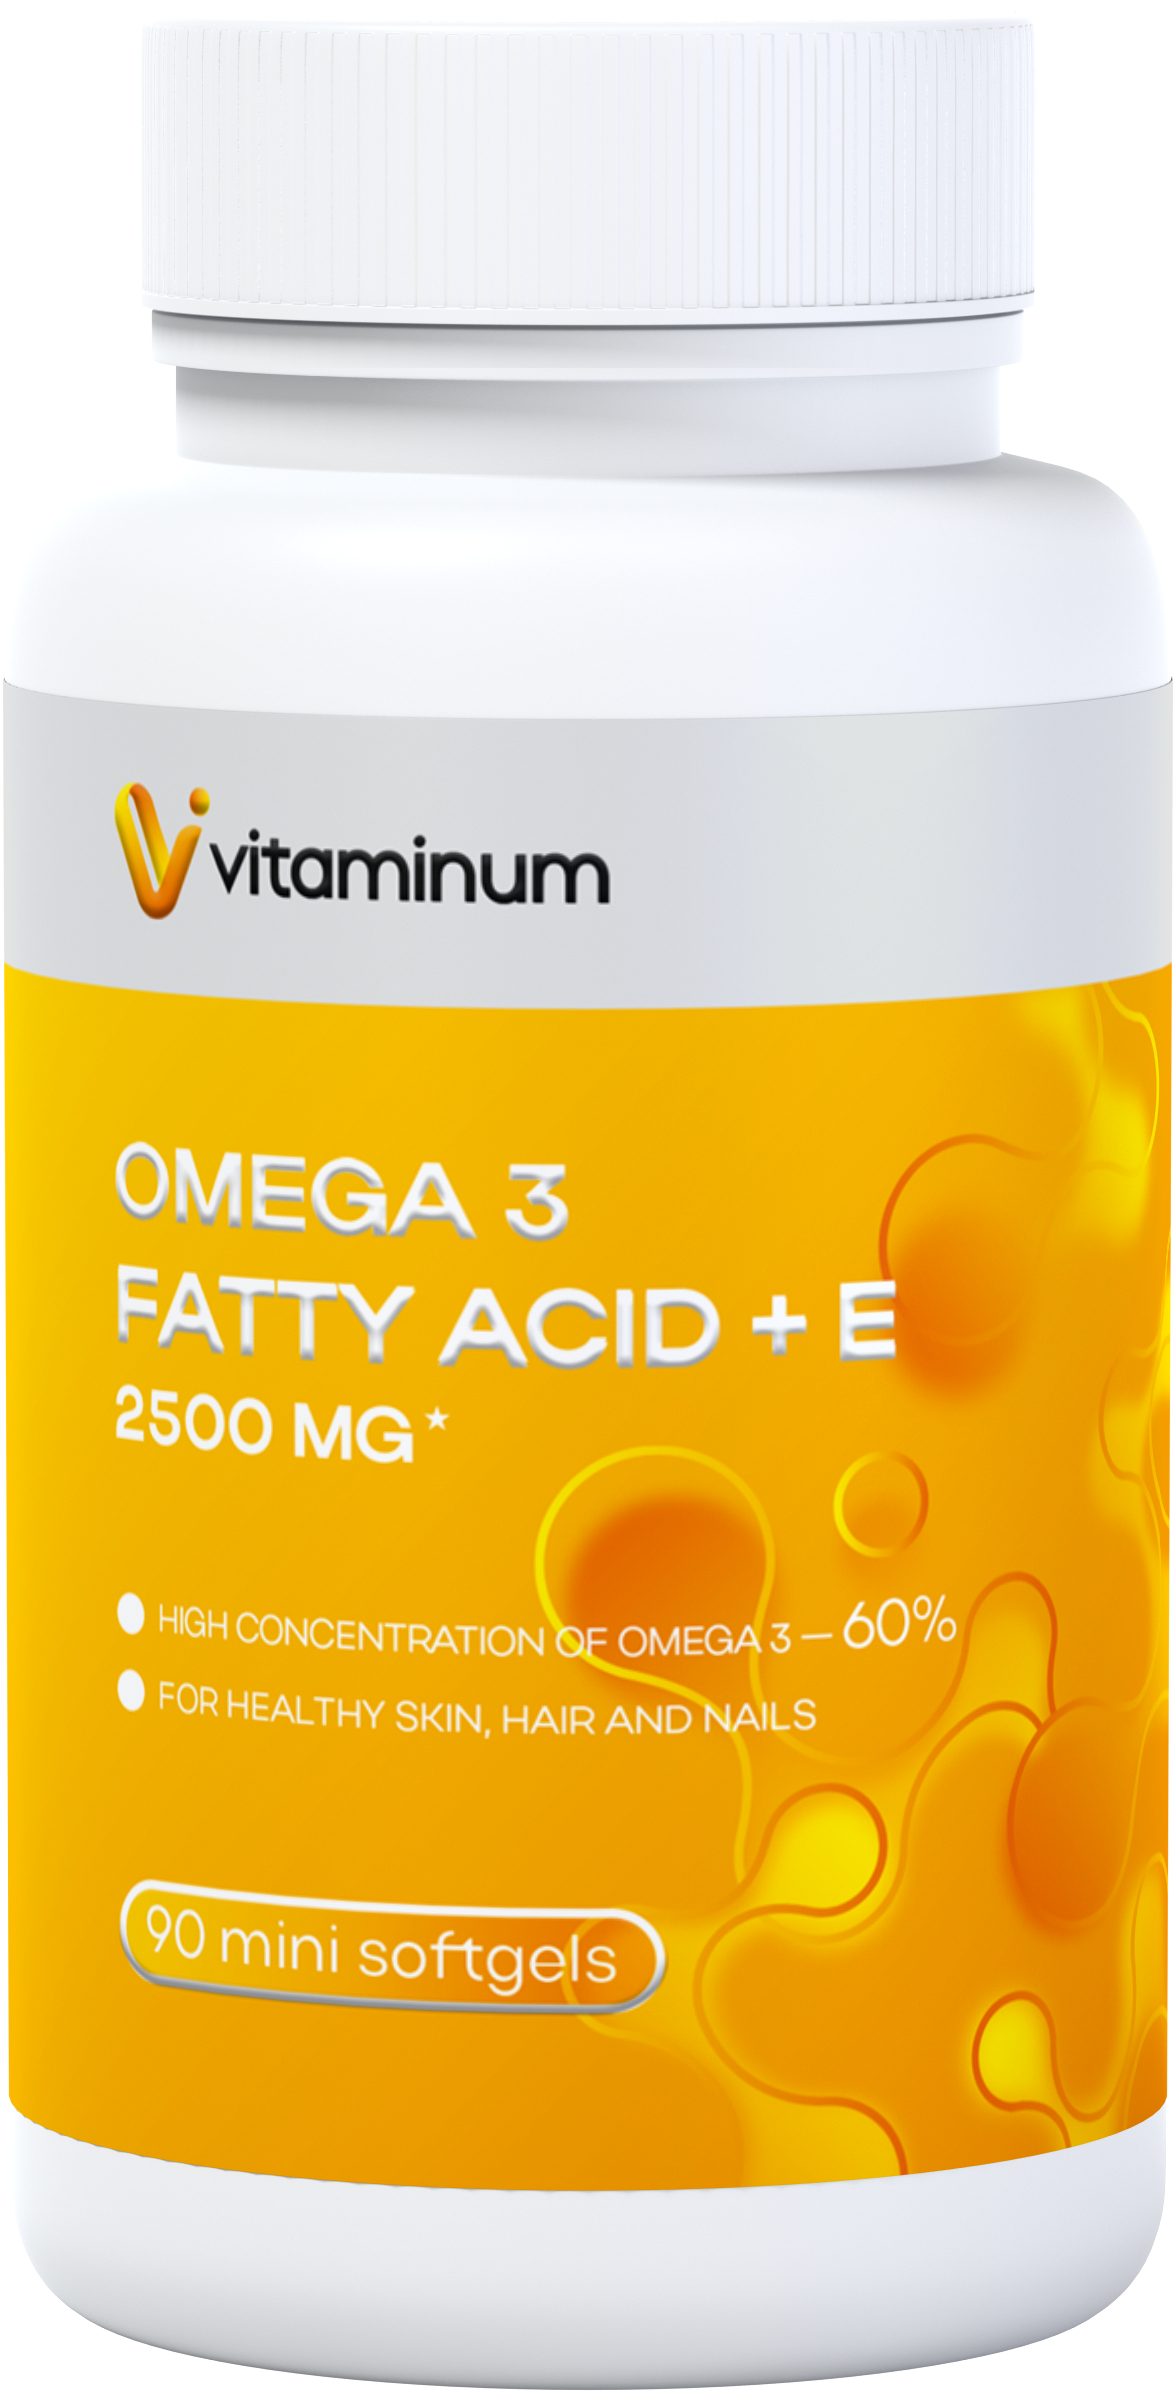  Vitaminum ОМЕГА 3 60% + витамин Е (2500 MG*) 90 капсул 700 мг   в Ревде